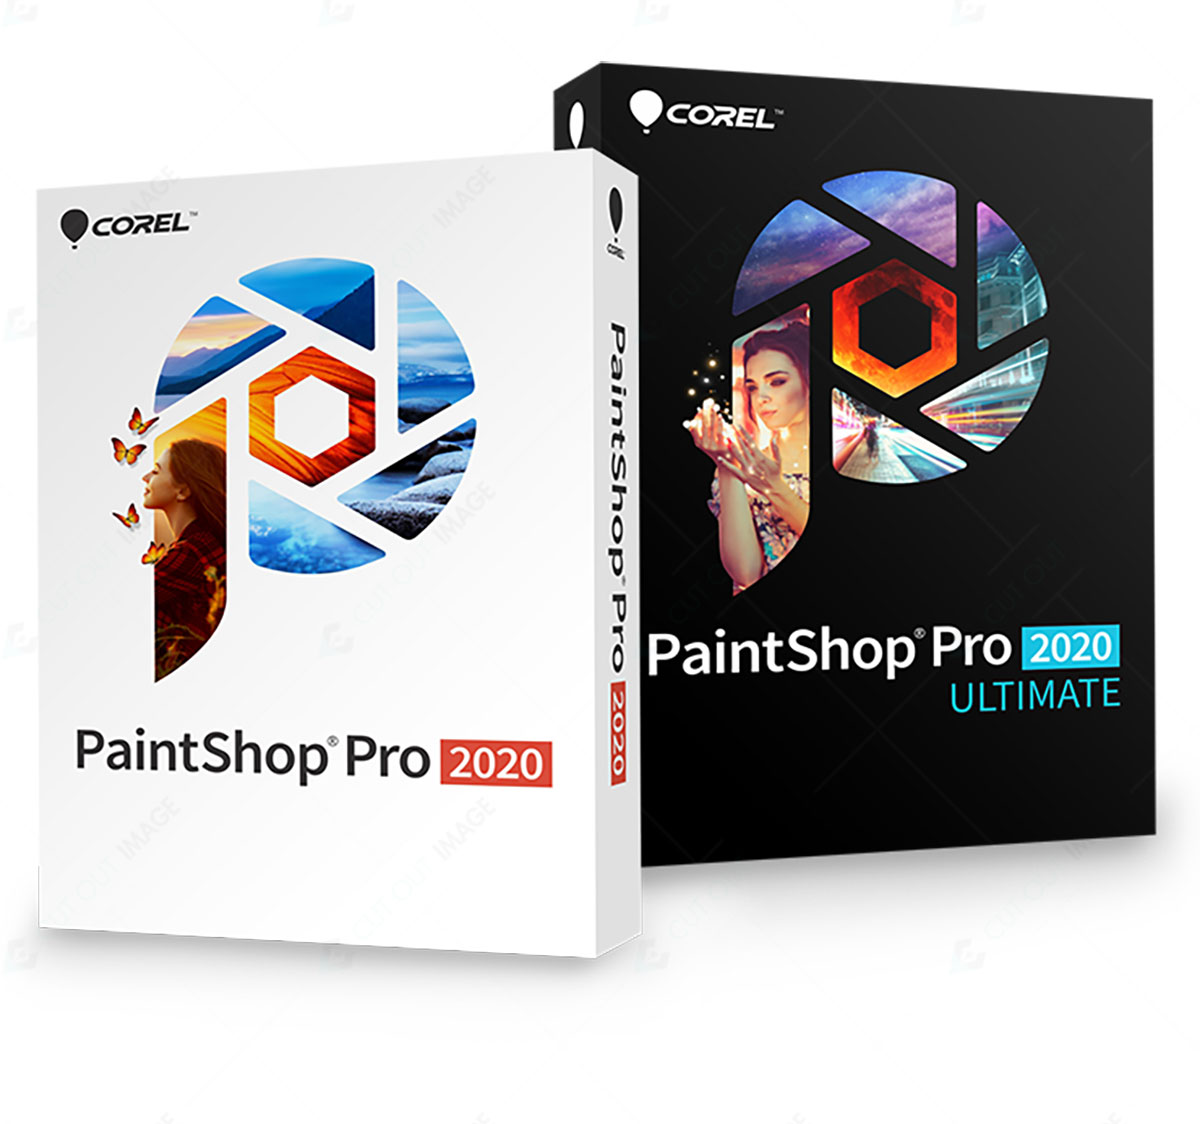 Using PaintShop Pro